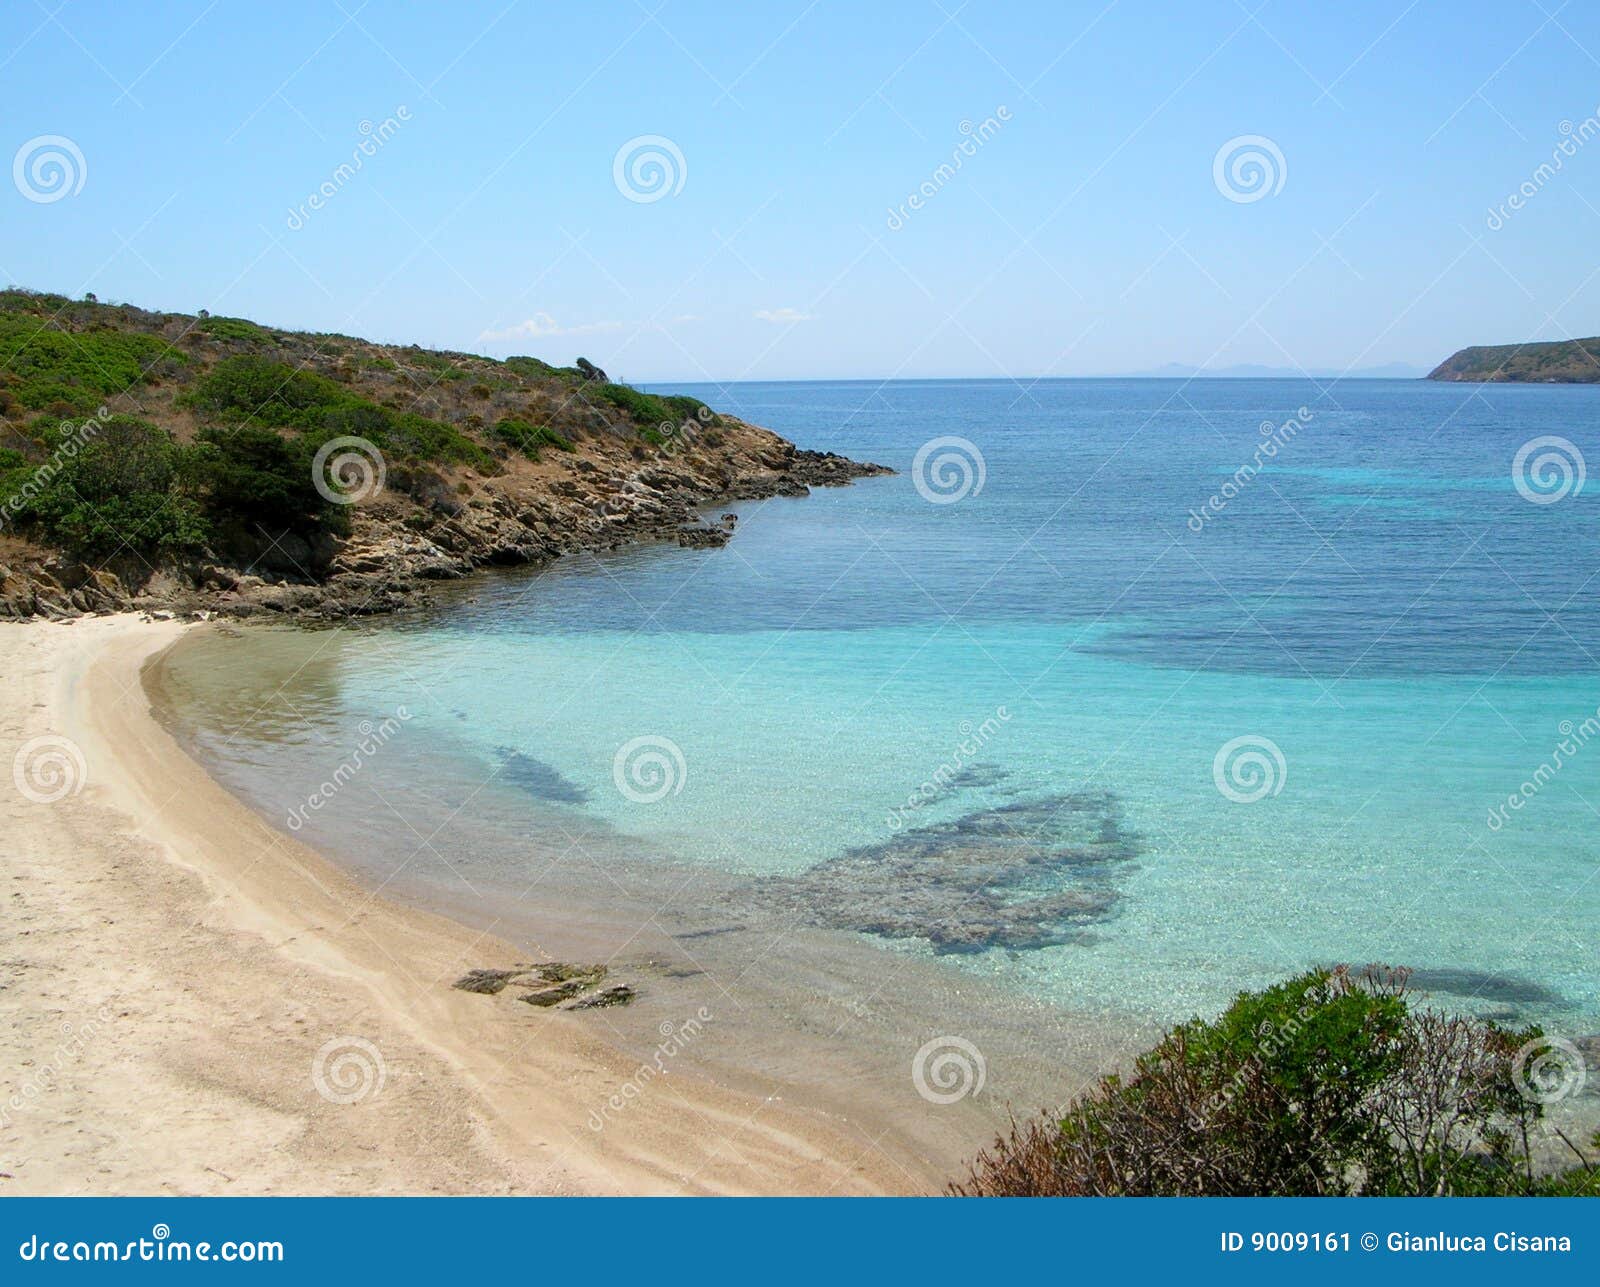 asinara isle beach (italy)